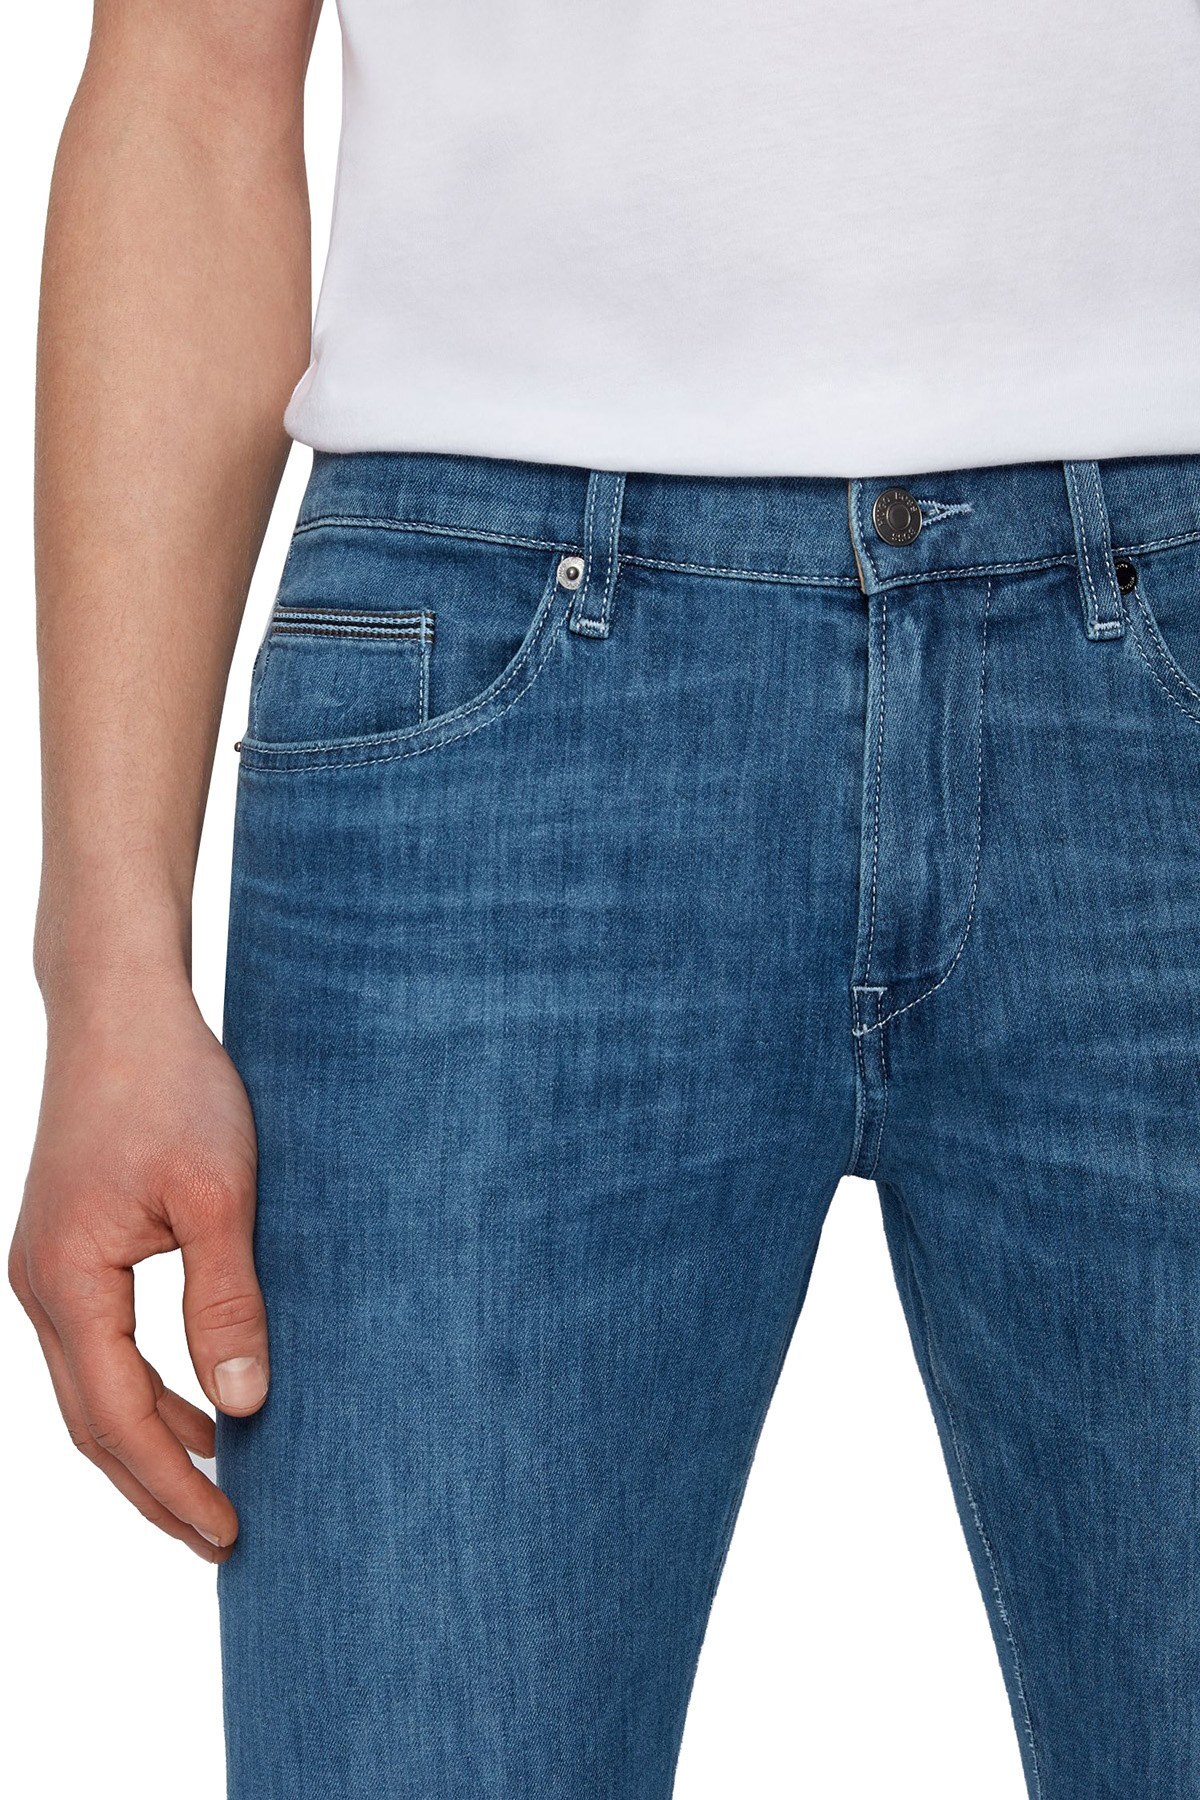 Hugo Boss Pamuklu Slim Fit Jeans Erkek Kot Pantolon 50449703 436 LACİVERT